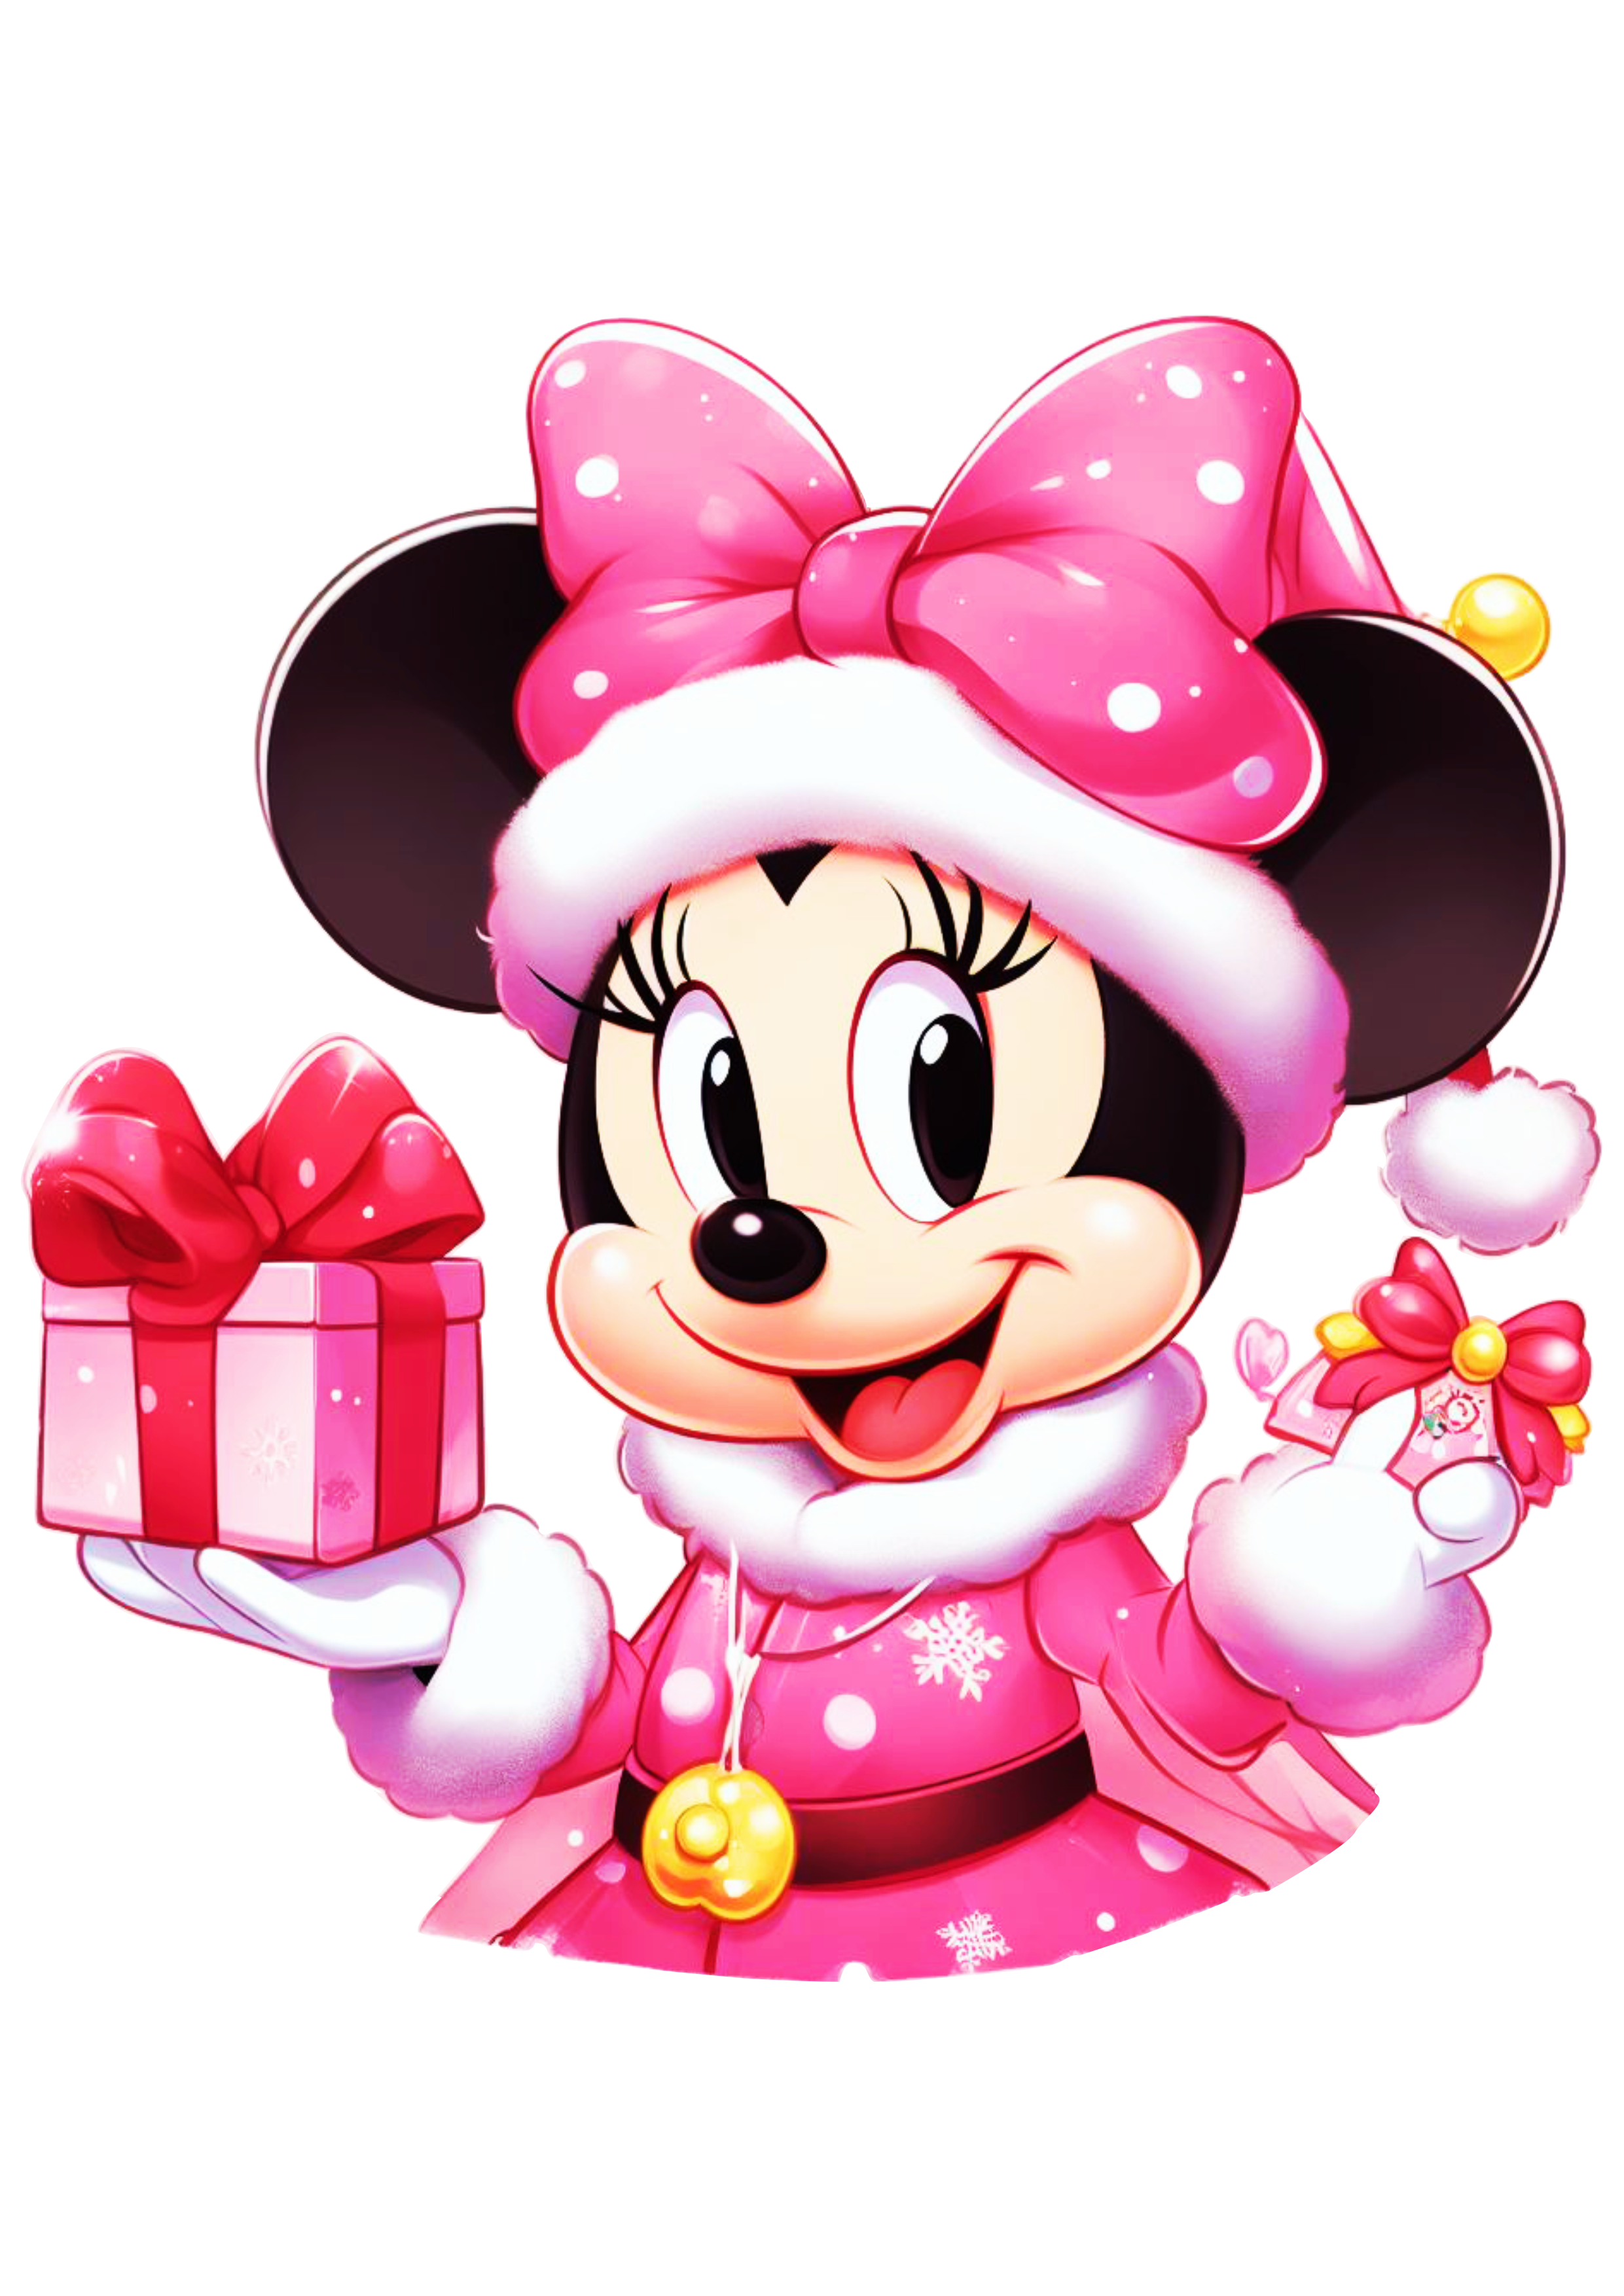 Minnie Mouse com vestido de natal desenho bonitinho decoração de festa png